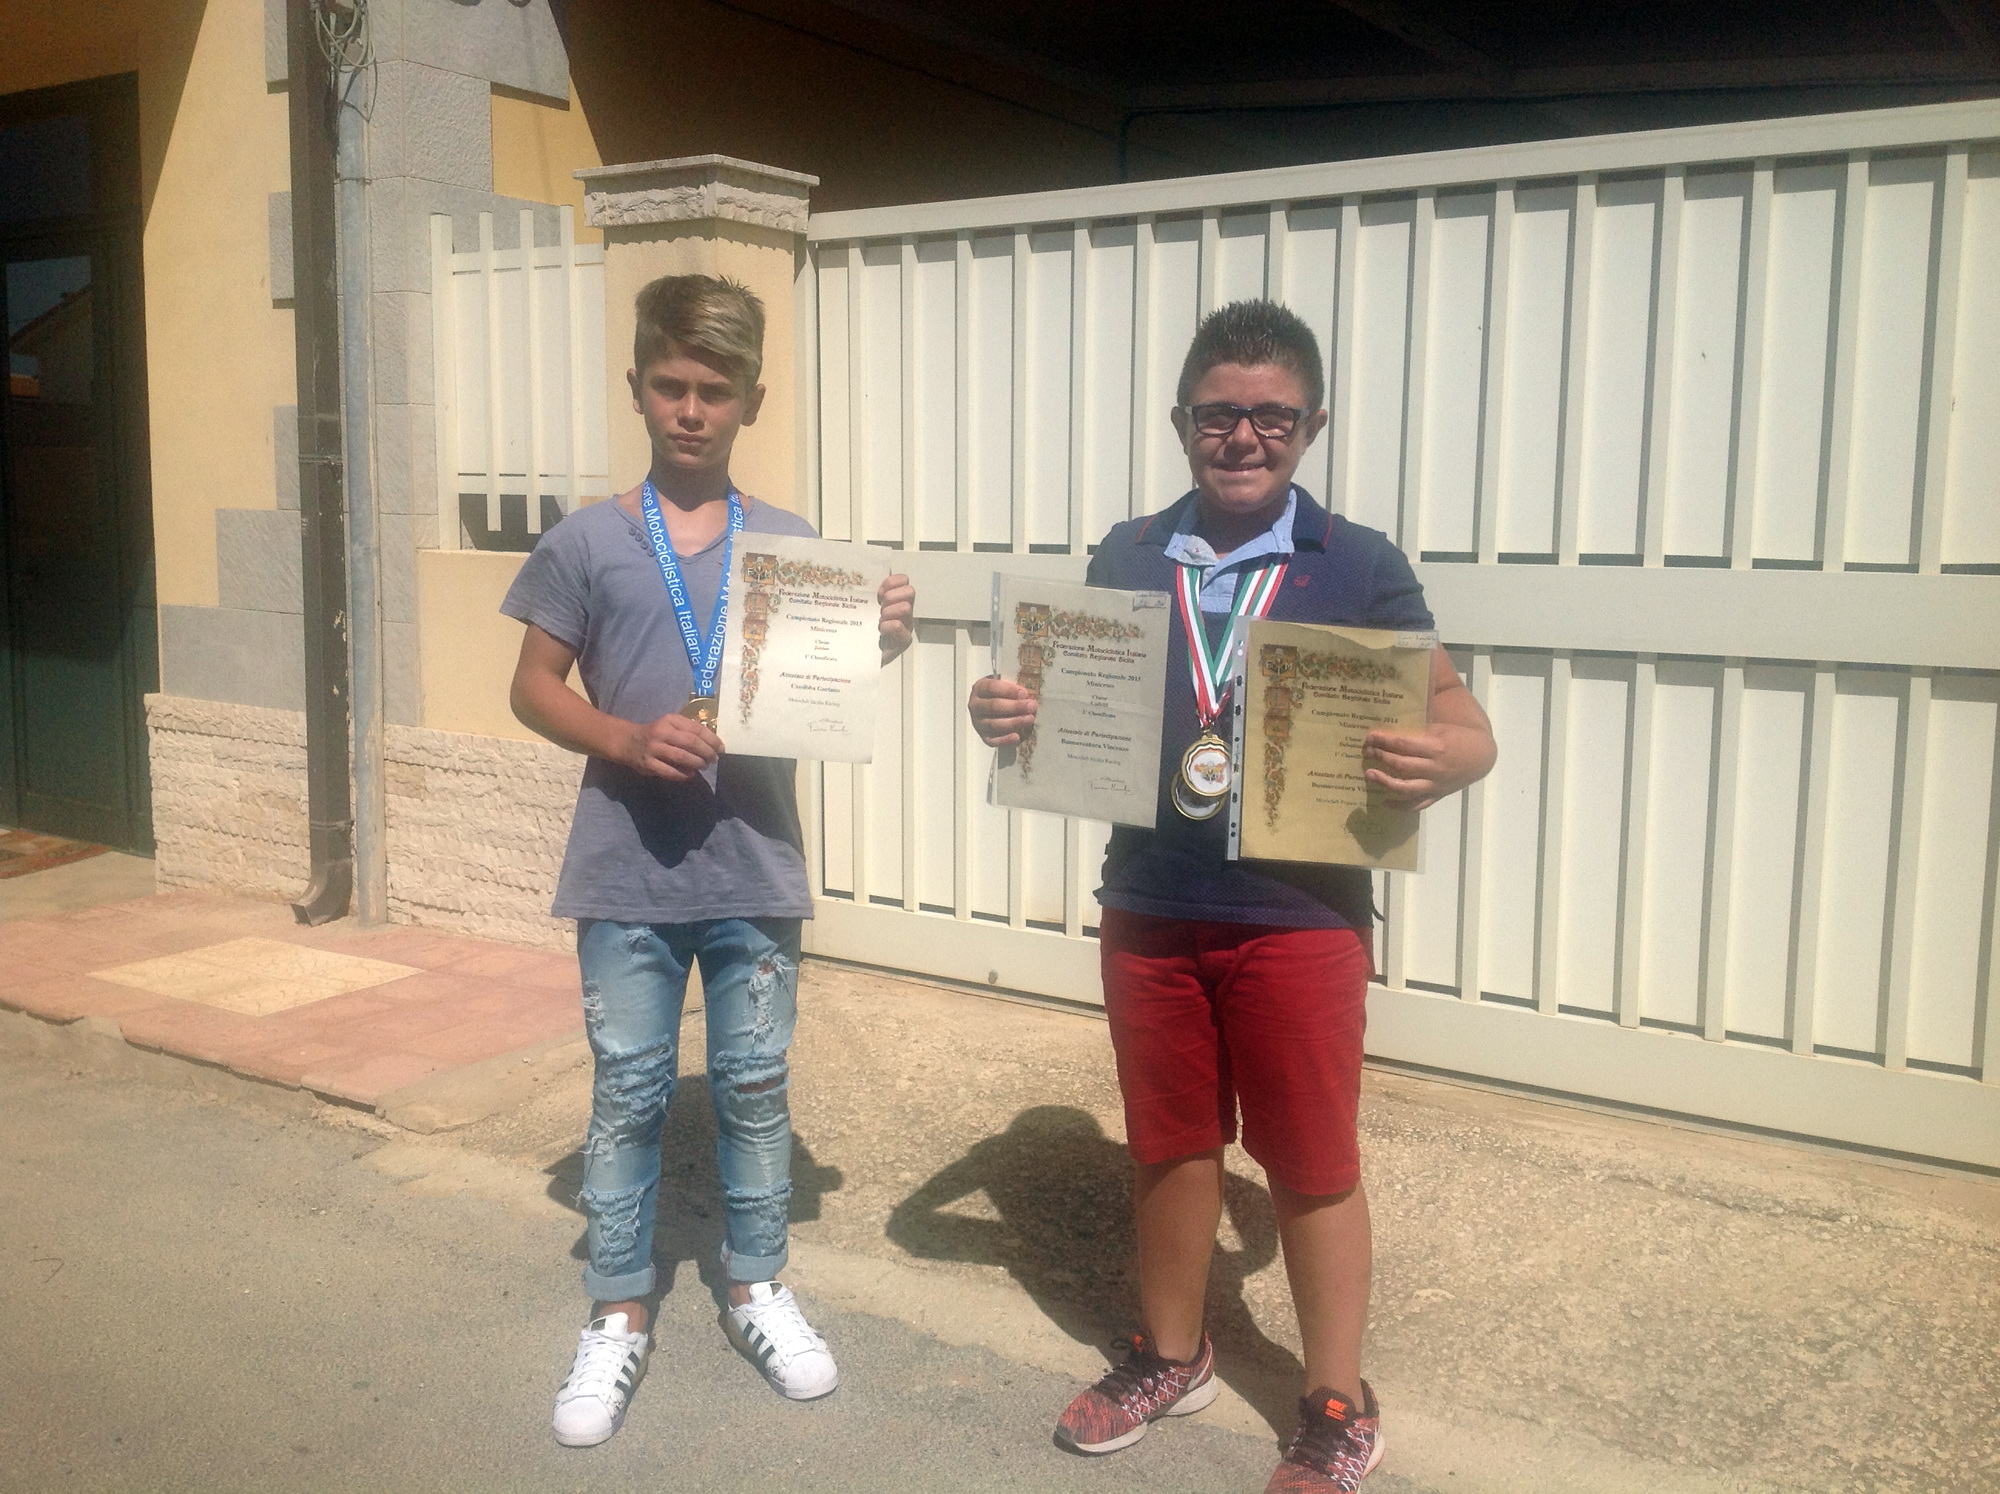  Motori, che passione: Gaetano e Vincenzo a 11 anni già campioni minicross